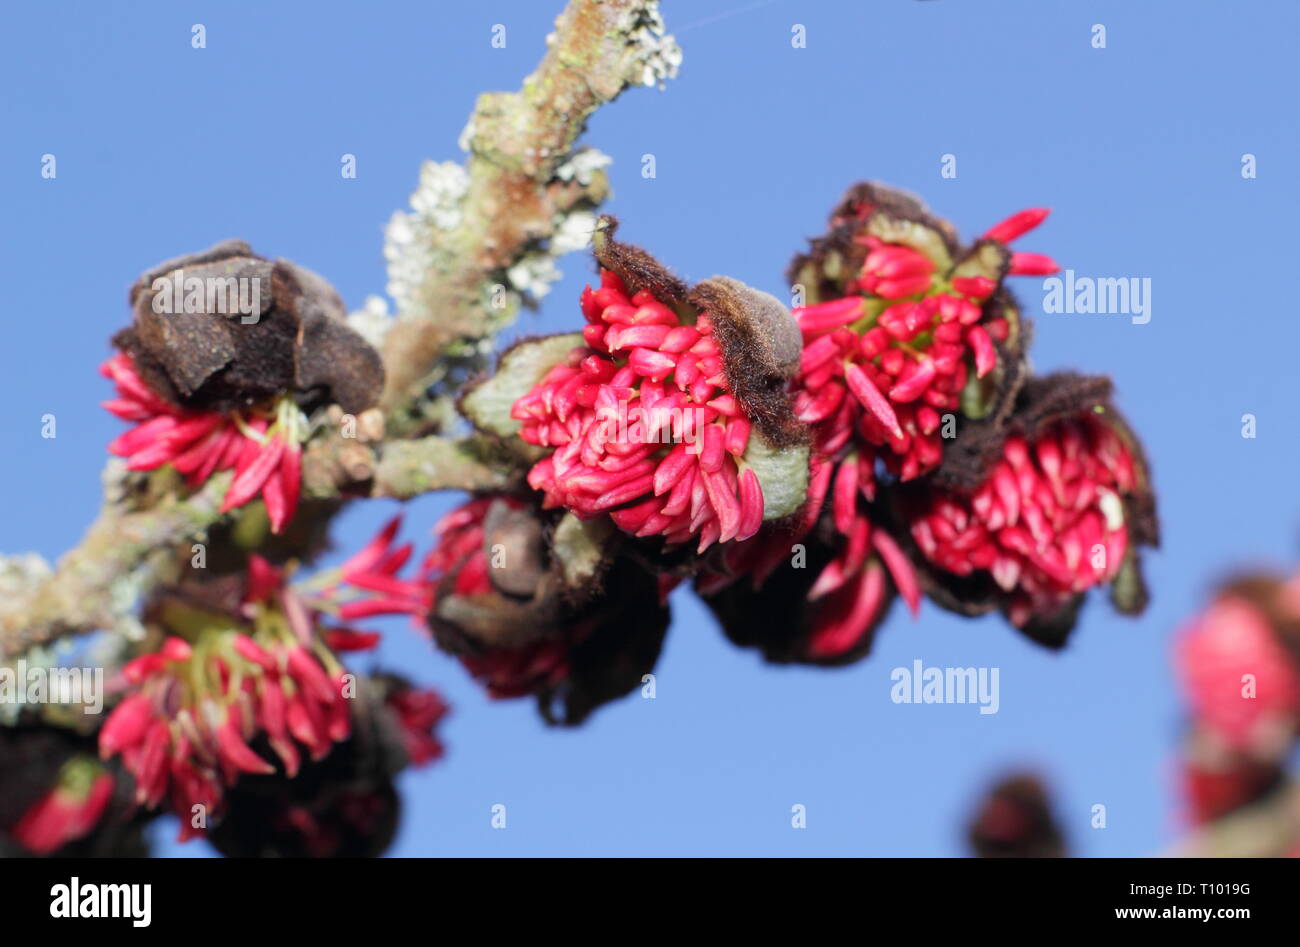 Parrotia persica. Fleurs arachnéennes du persan ironwood tree en hiver - Février, UK Banque D'Images